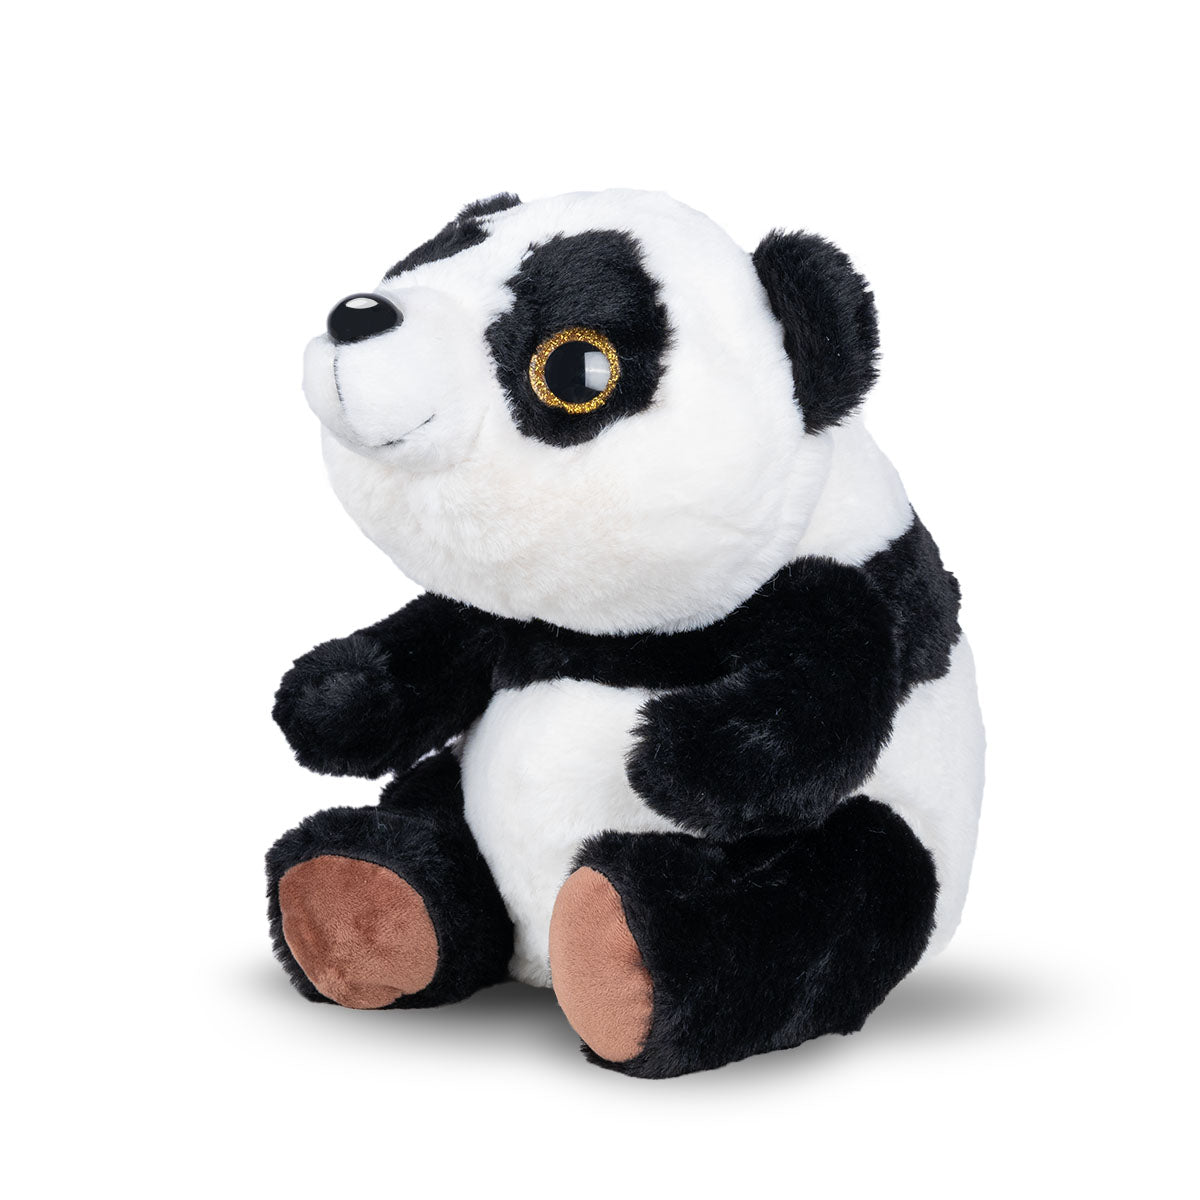 Dryly - bedwetting alarm - Cuddles - Wizzu Panda bear side